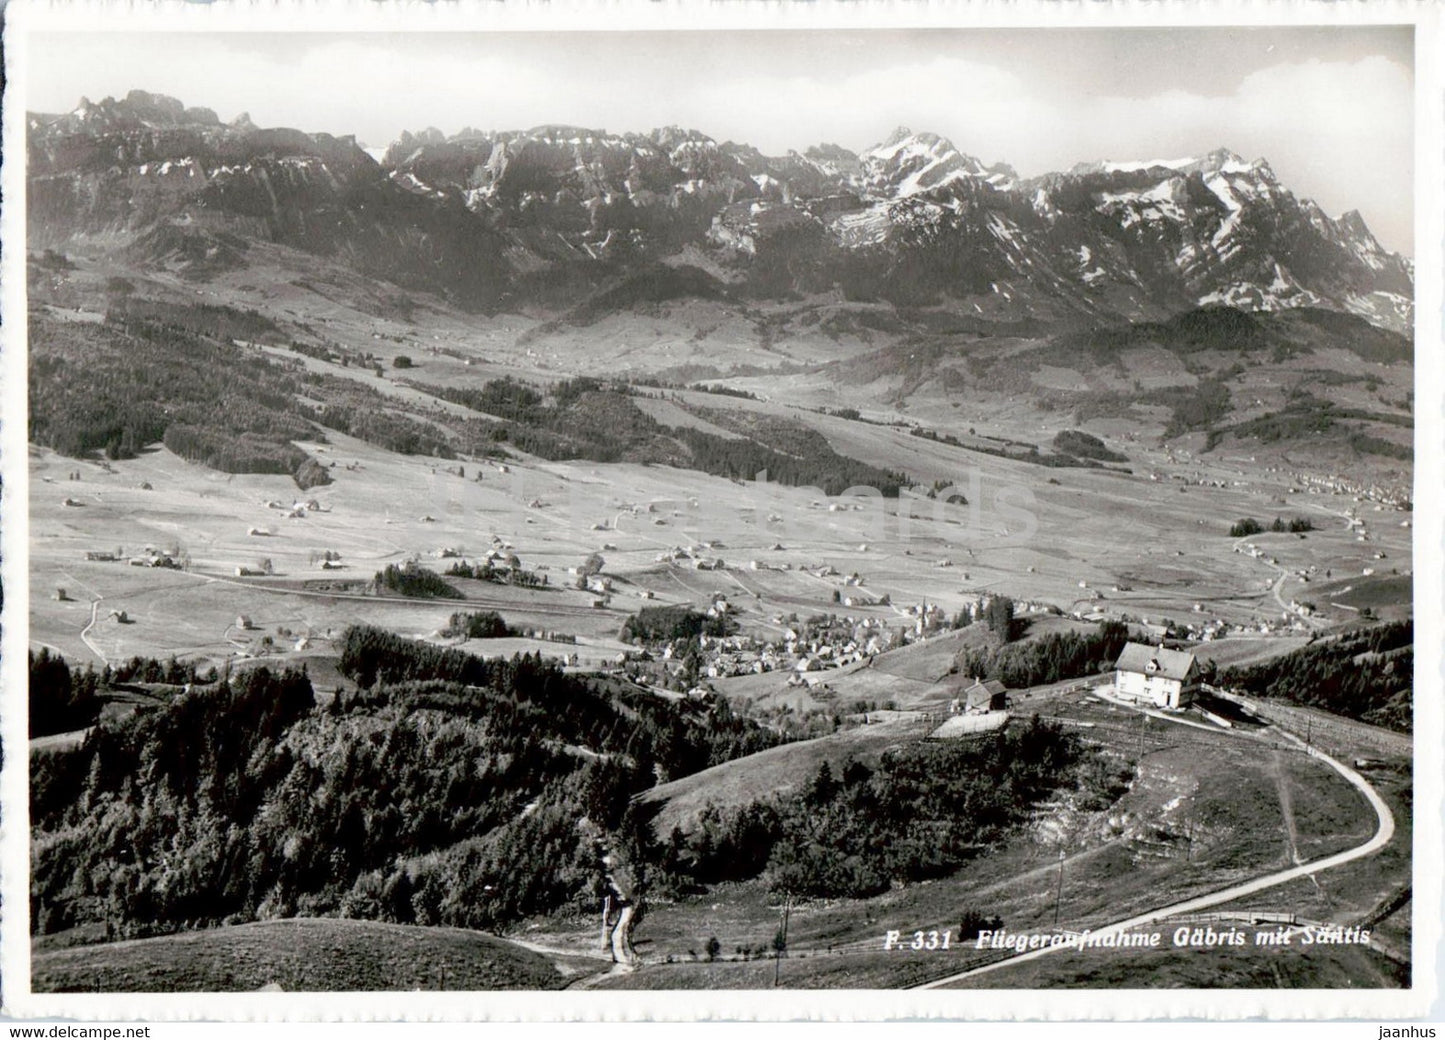 Fliegeraufnahme Gabris mit Santis - 331 - old postcard - Switzerland - unused - JH Postcards